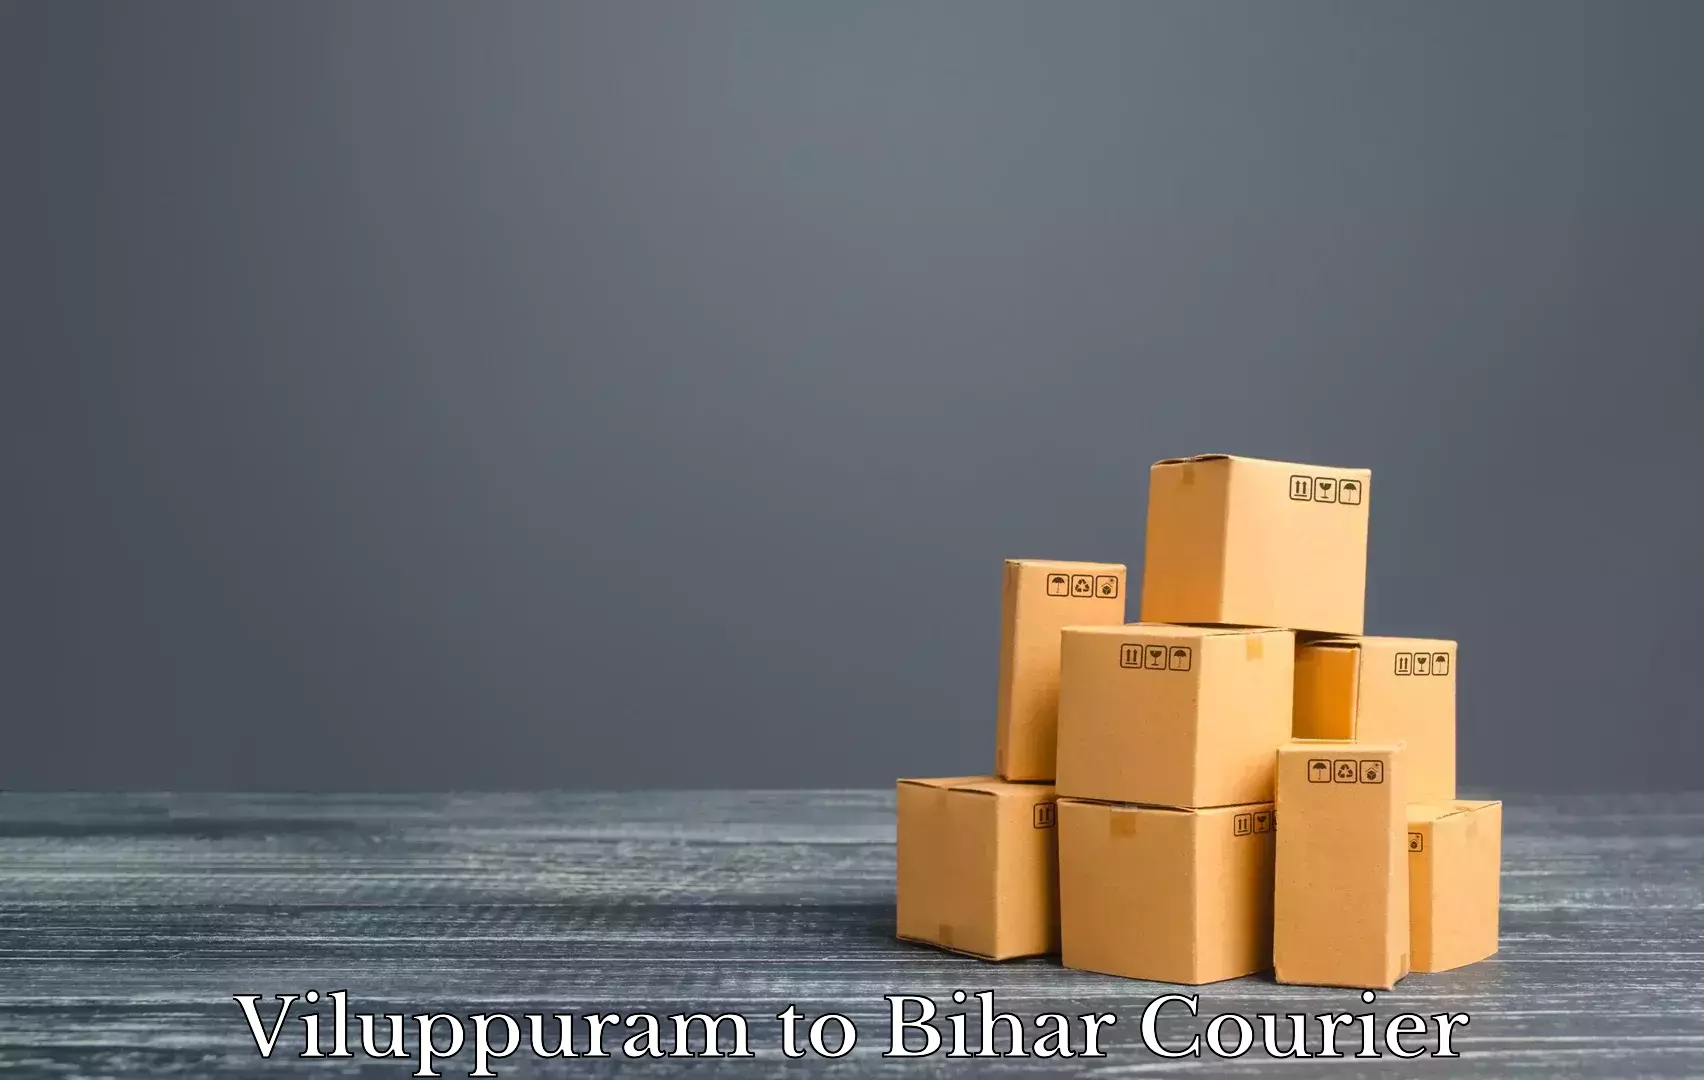 Furniture transport and storage in Viluppuram to Brahmapur